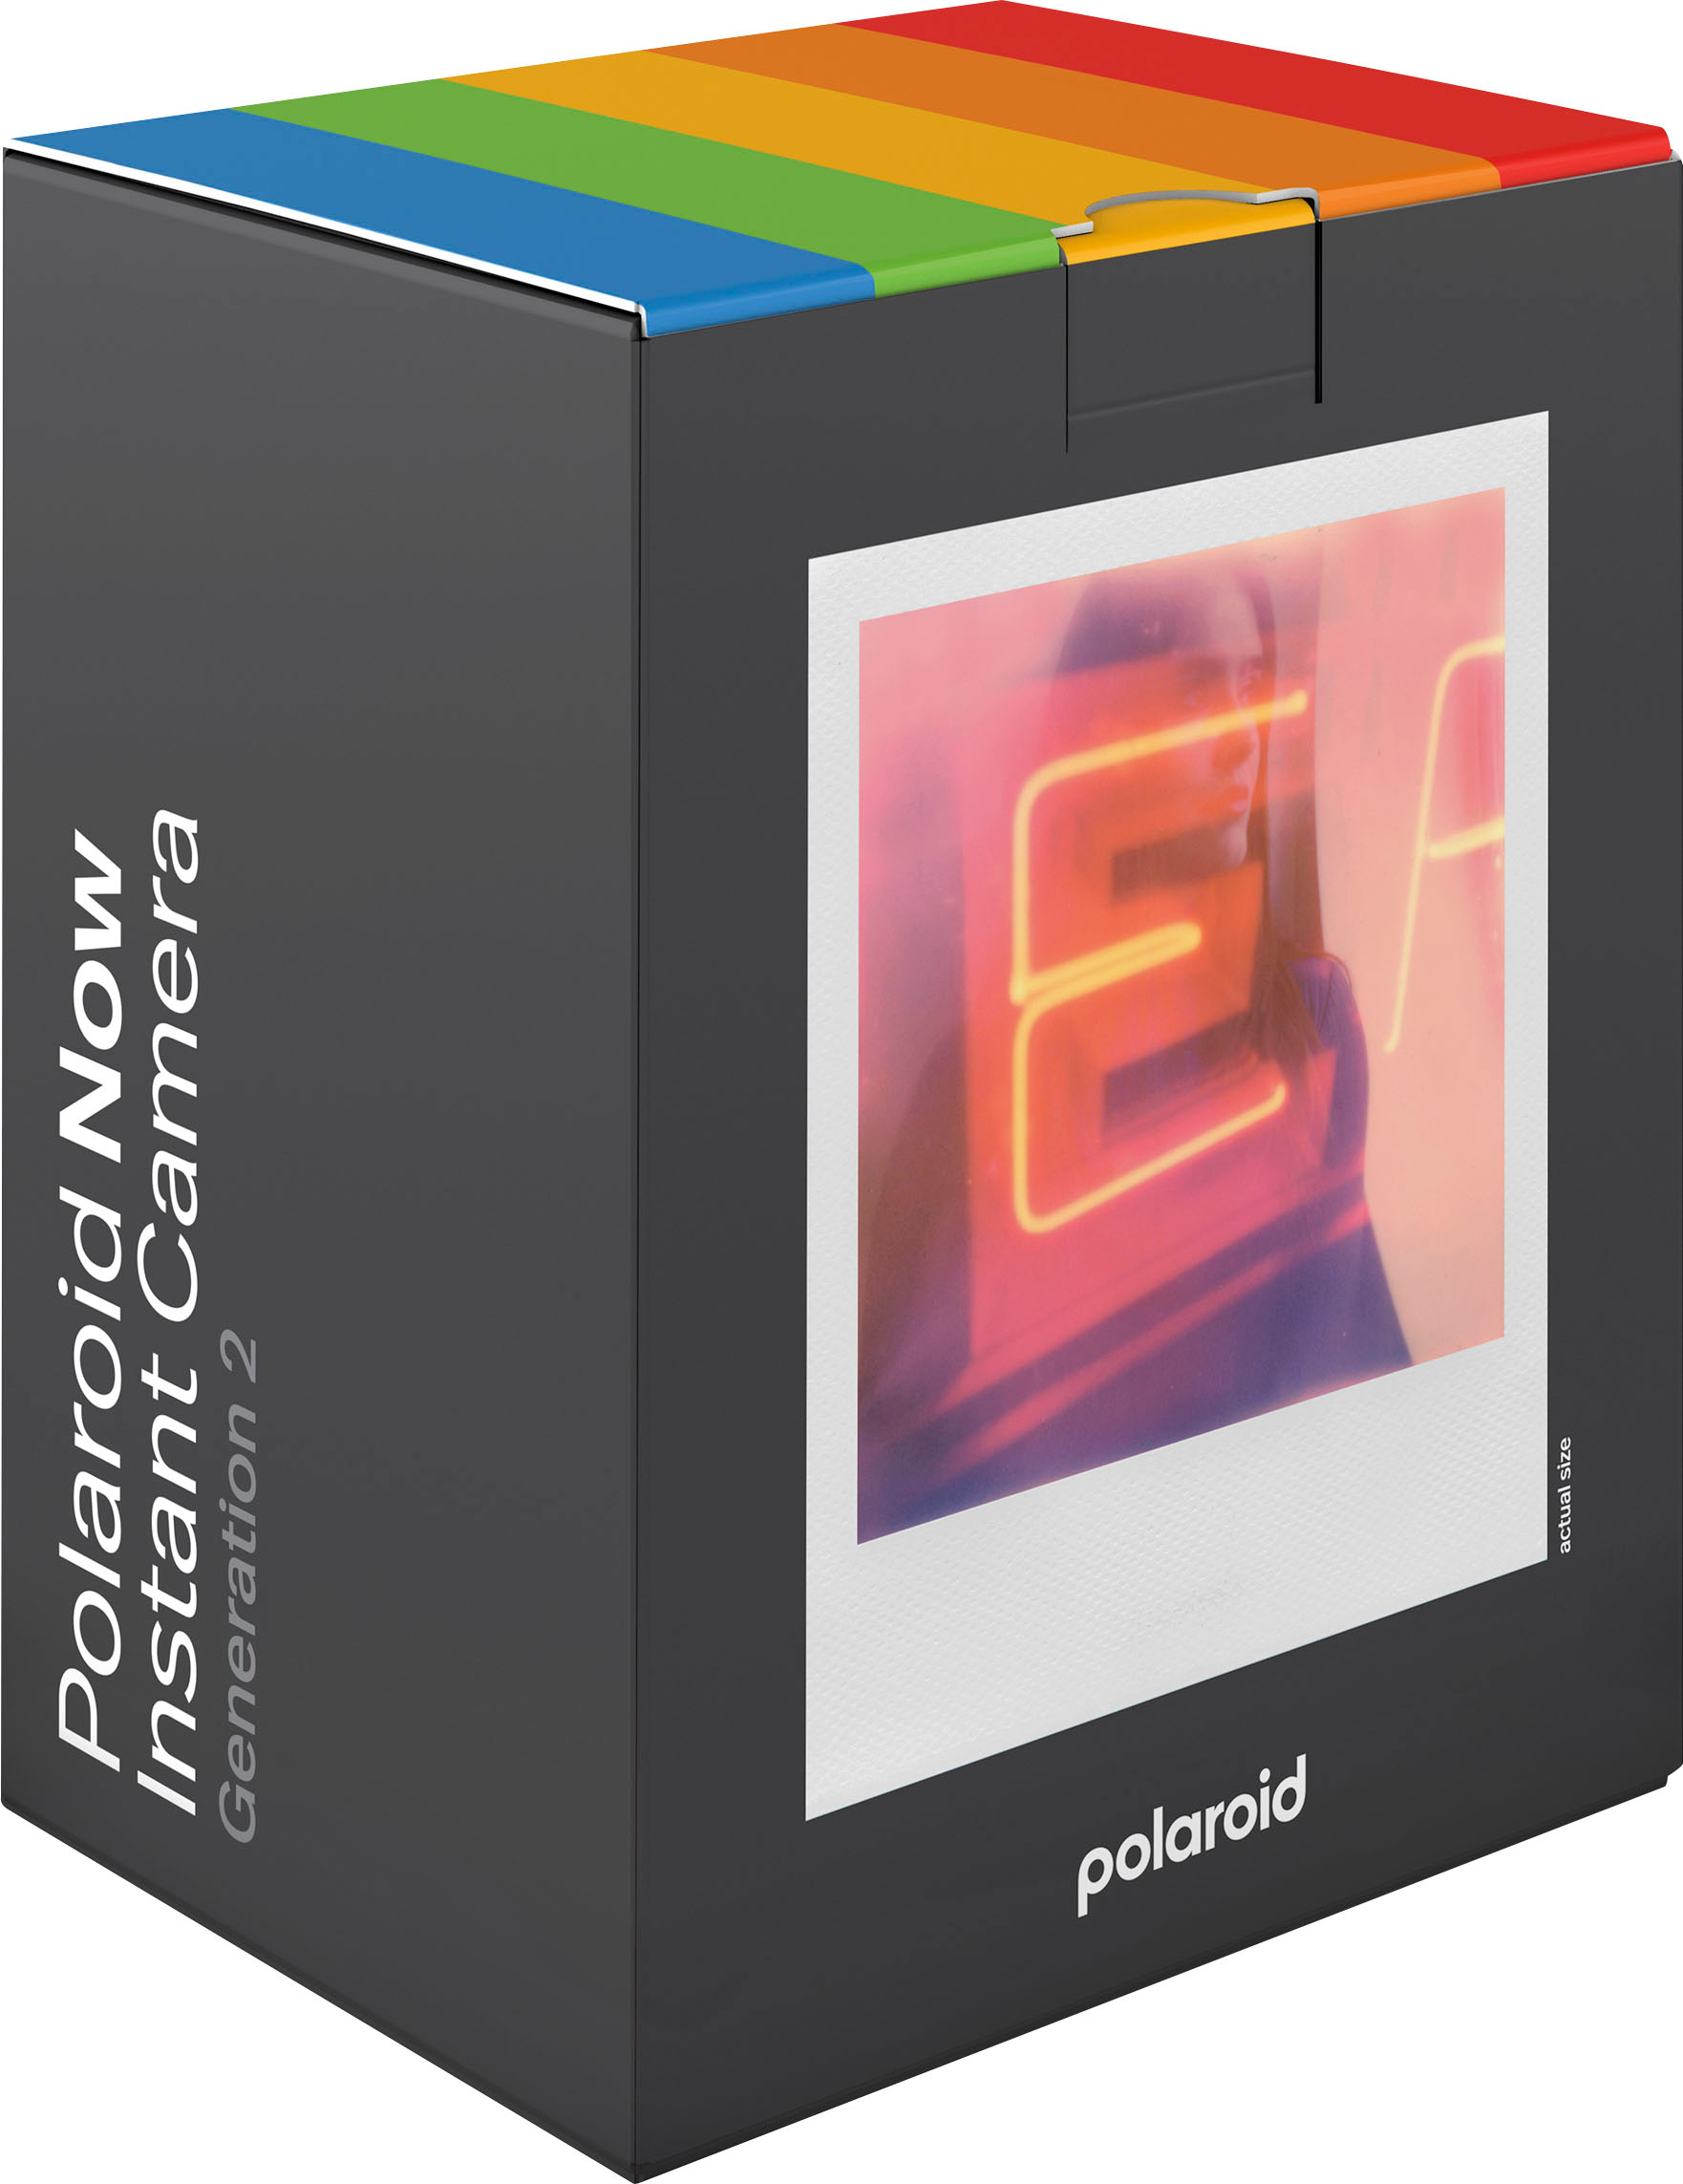 Polaroid Fotocamera istantanea 39009077 now+ 2gen white Compact  DIMFDIPSPZZ962 Epto